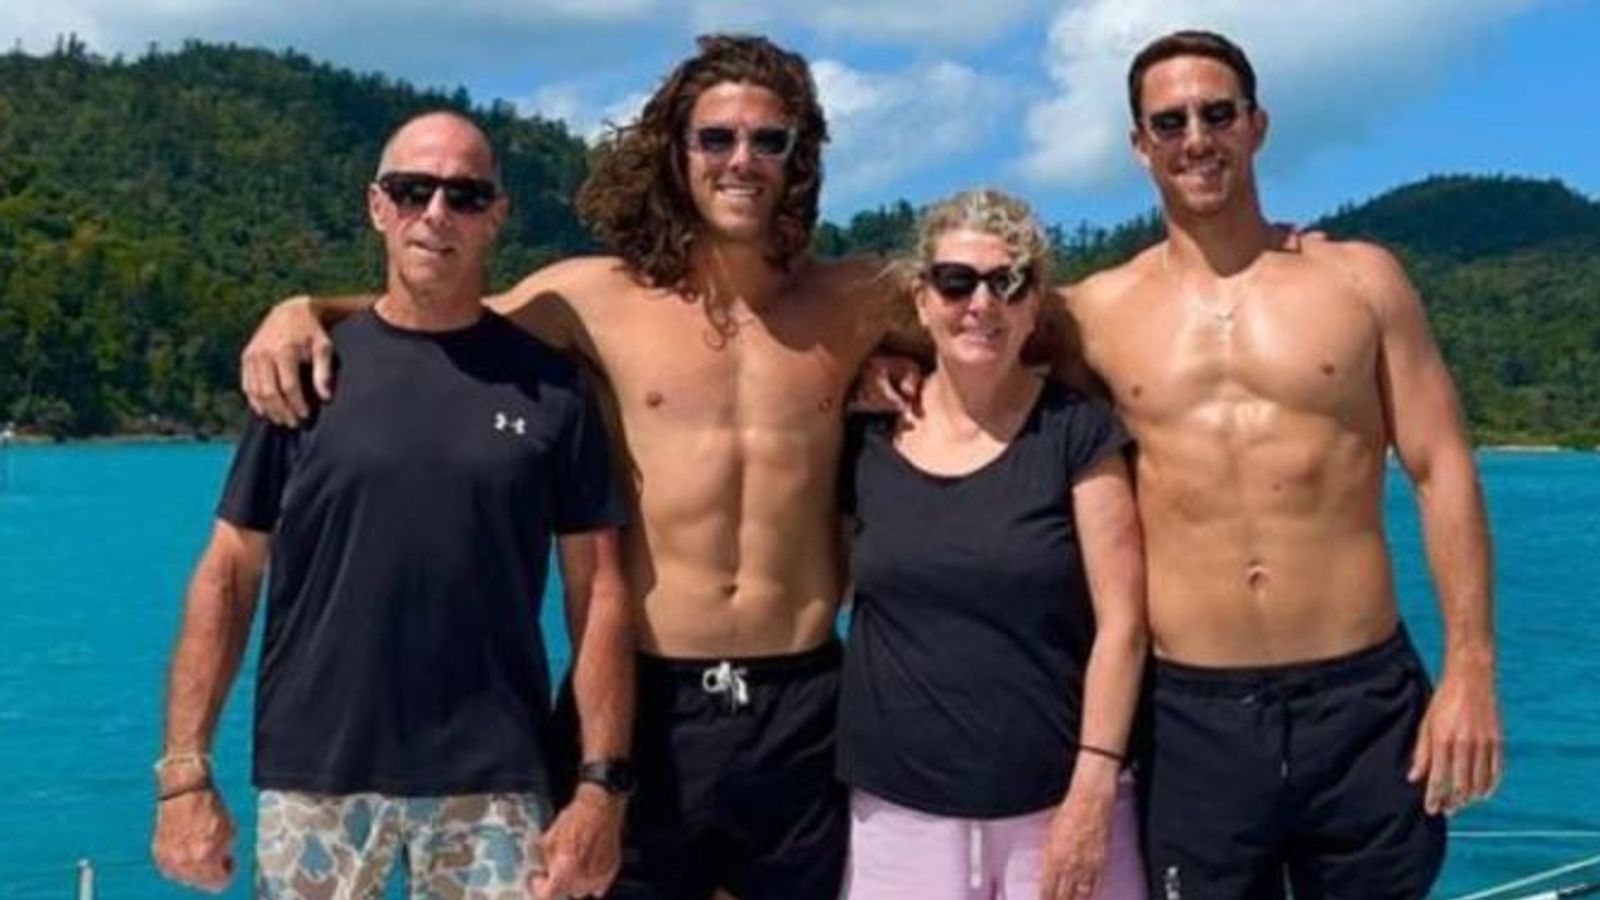 Corps retrouvés à la recherche de frères australiens et d’un Américain disparus lors d’un voyage de surf au Mexique |  Nouvelles du monde